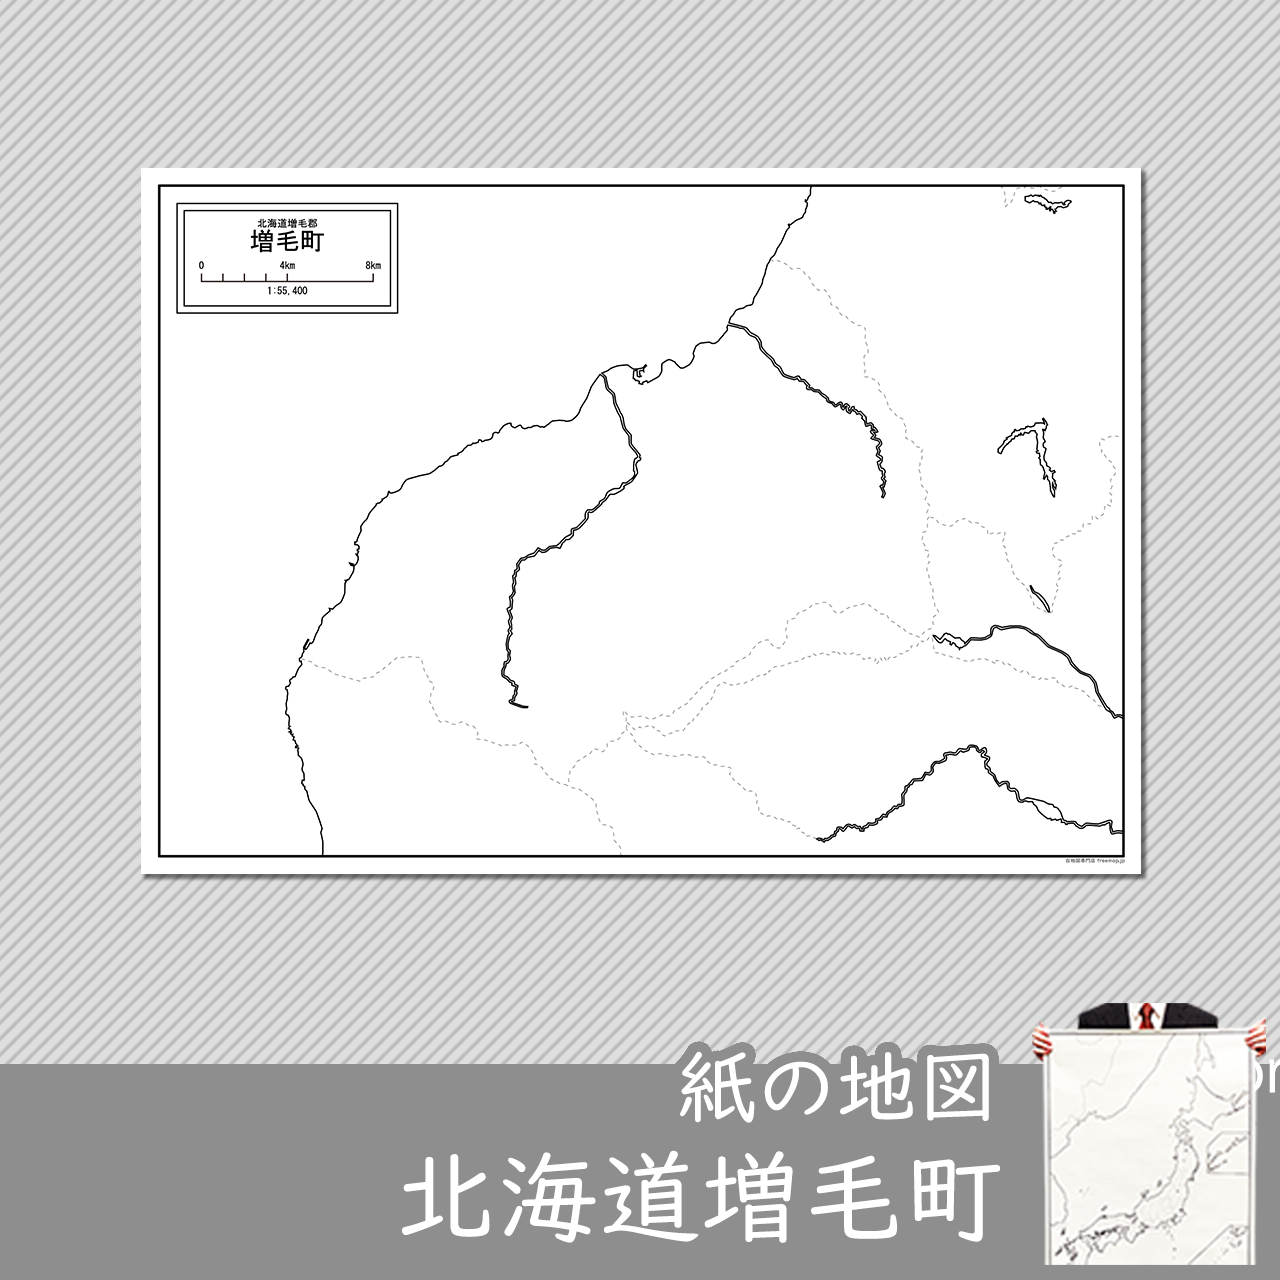 増毛町の紙の白地図のサムネイル